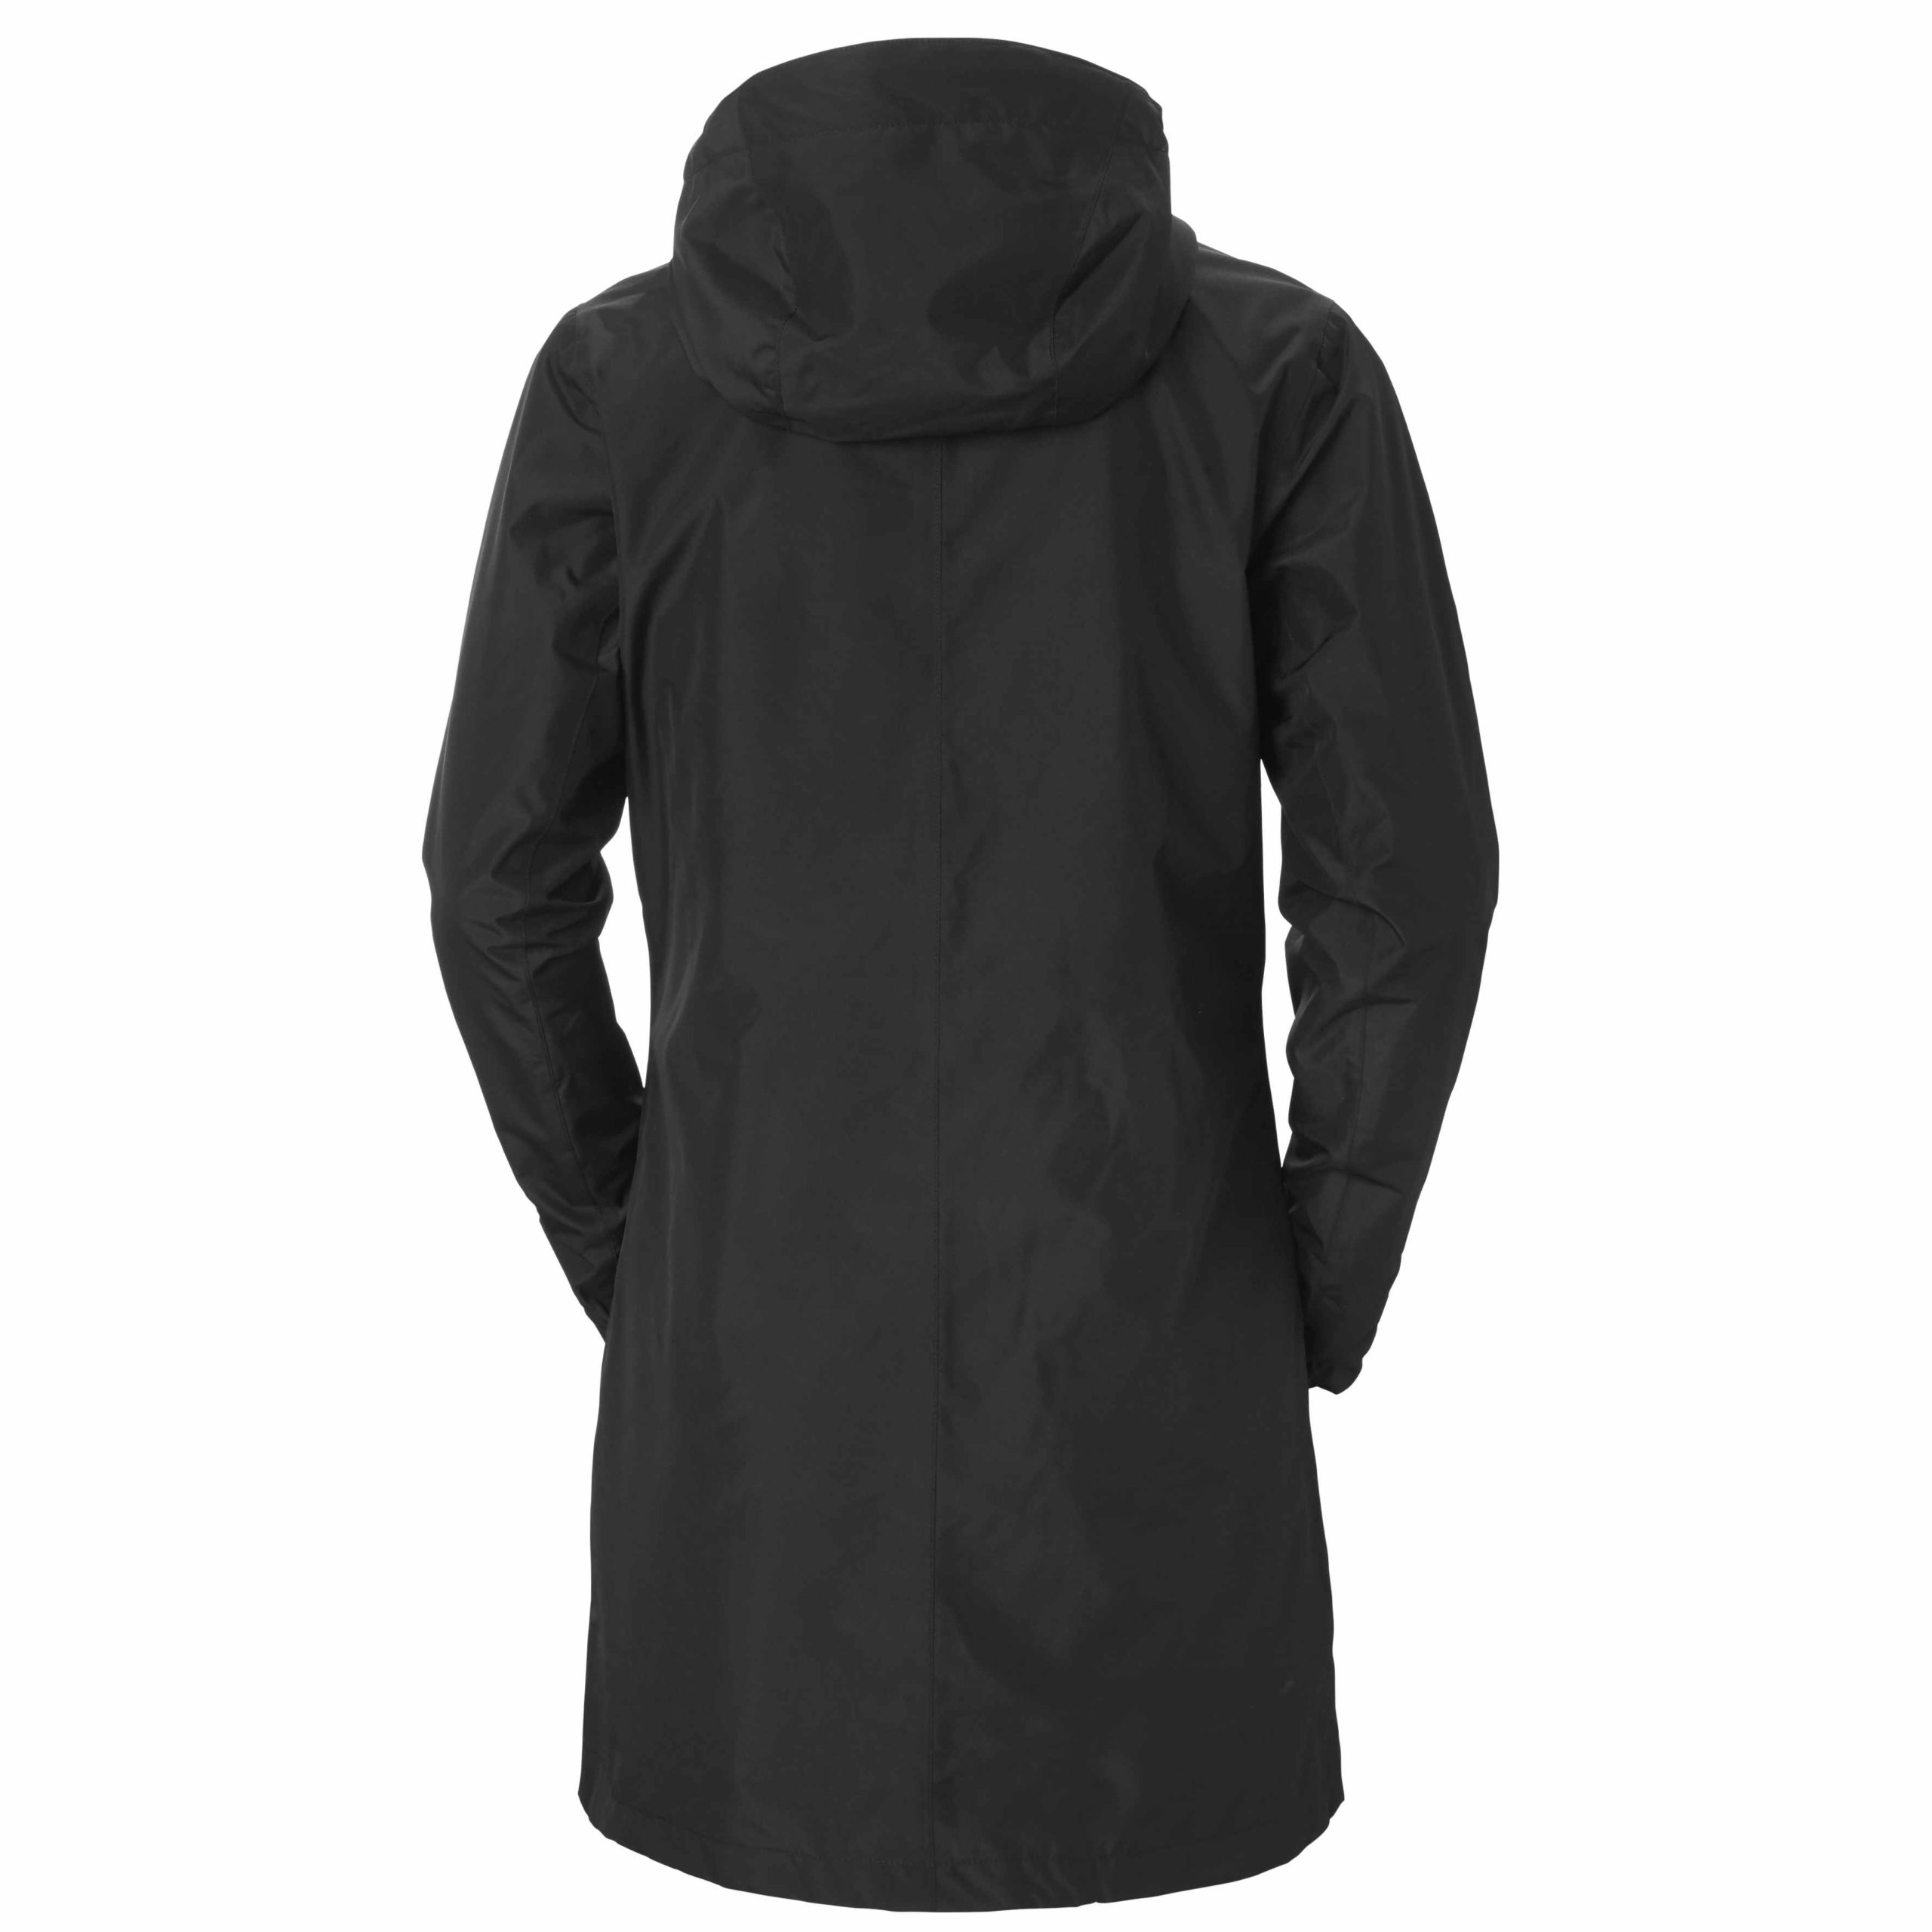 Helly Hansen Women's Valkyrie Hooded Rain Jacket, Waterproof